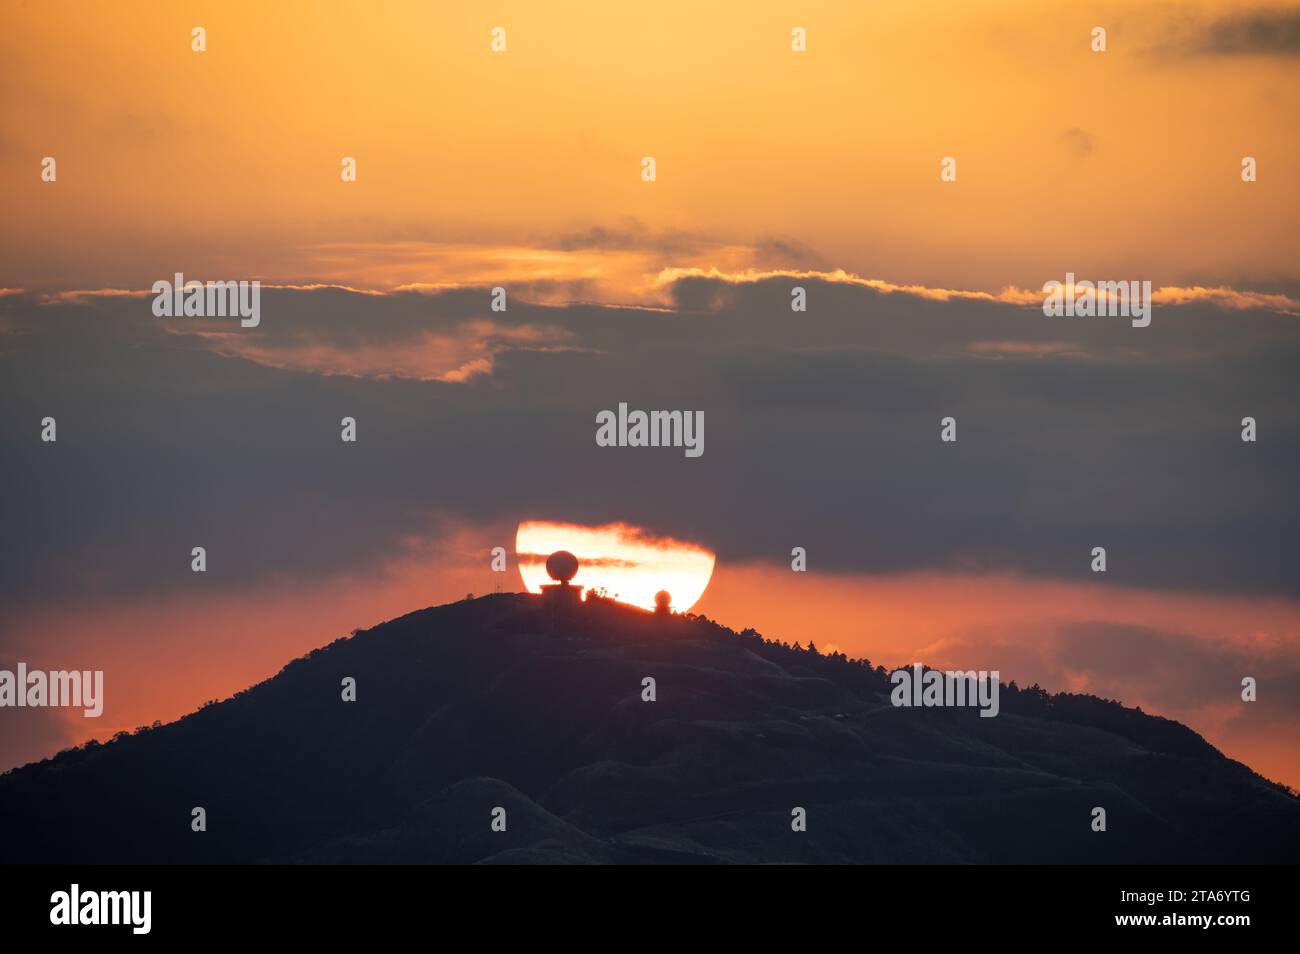 Spektakuläre Nahaufnahme des Sonnenuntergangs. Orangefarbener, flammender Himmel. Im Vordergrund befindet sich die Wufenshan Wetterradar-Station. Ruifang, Taiwan. Stockfoto